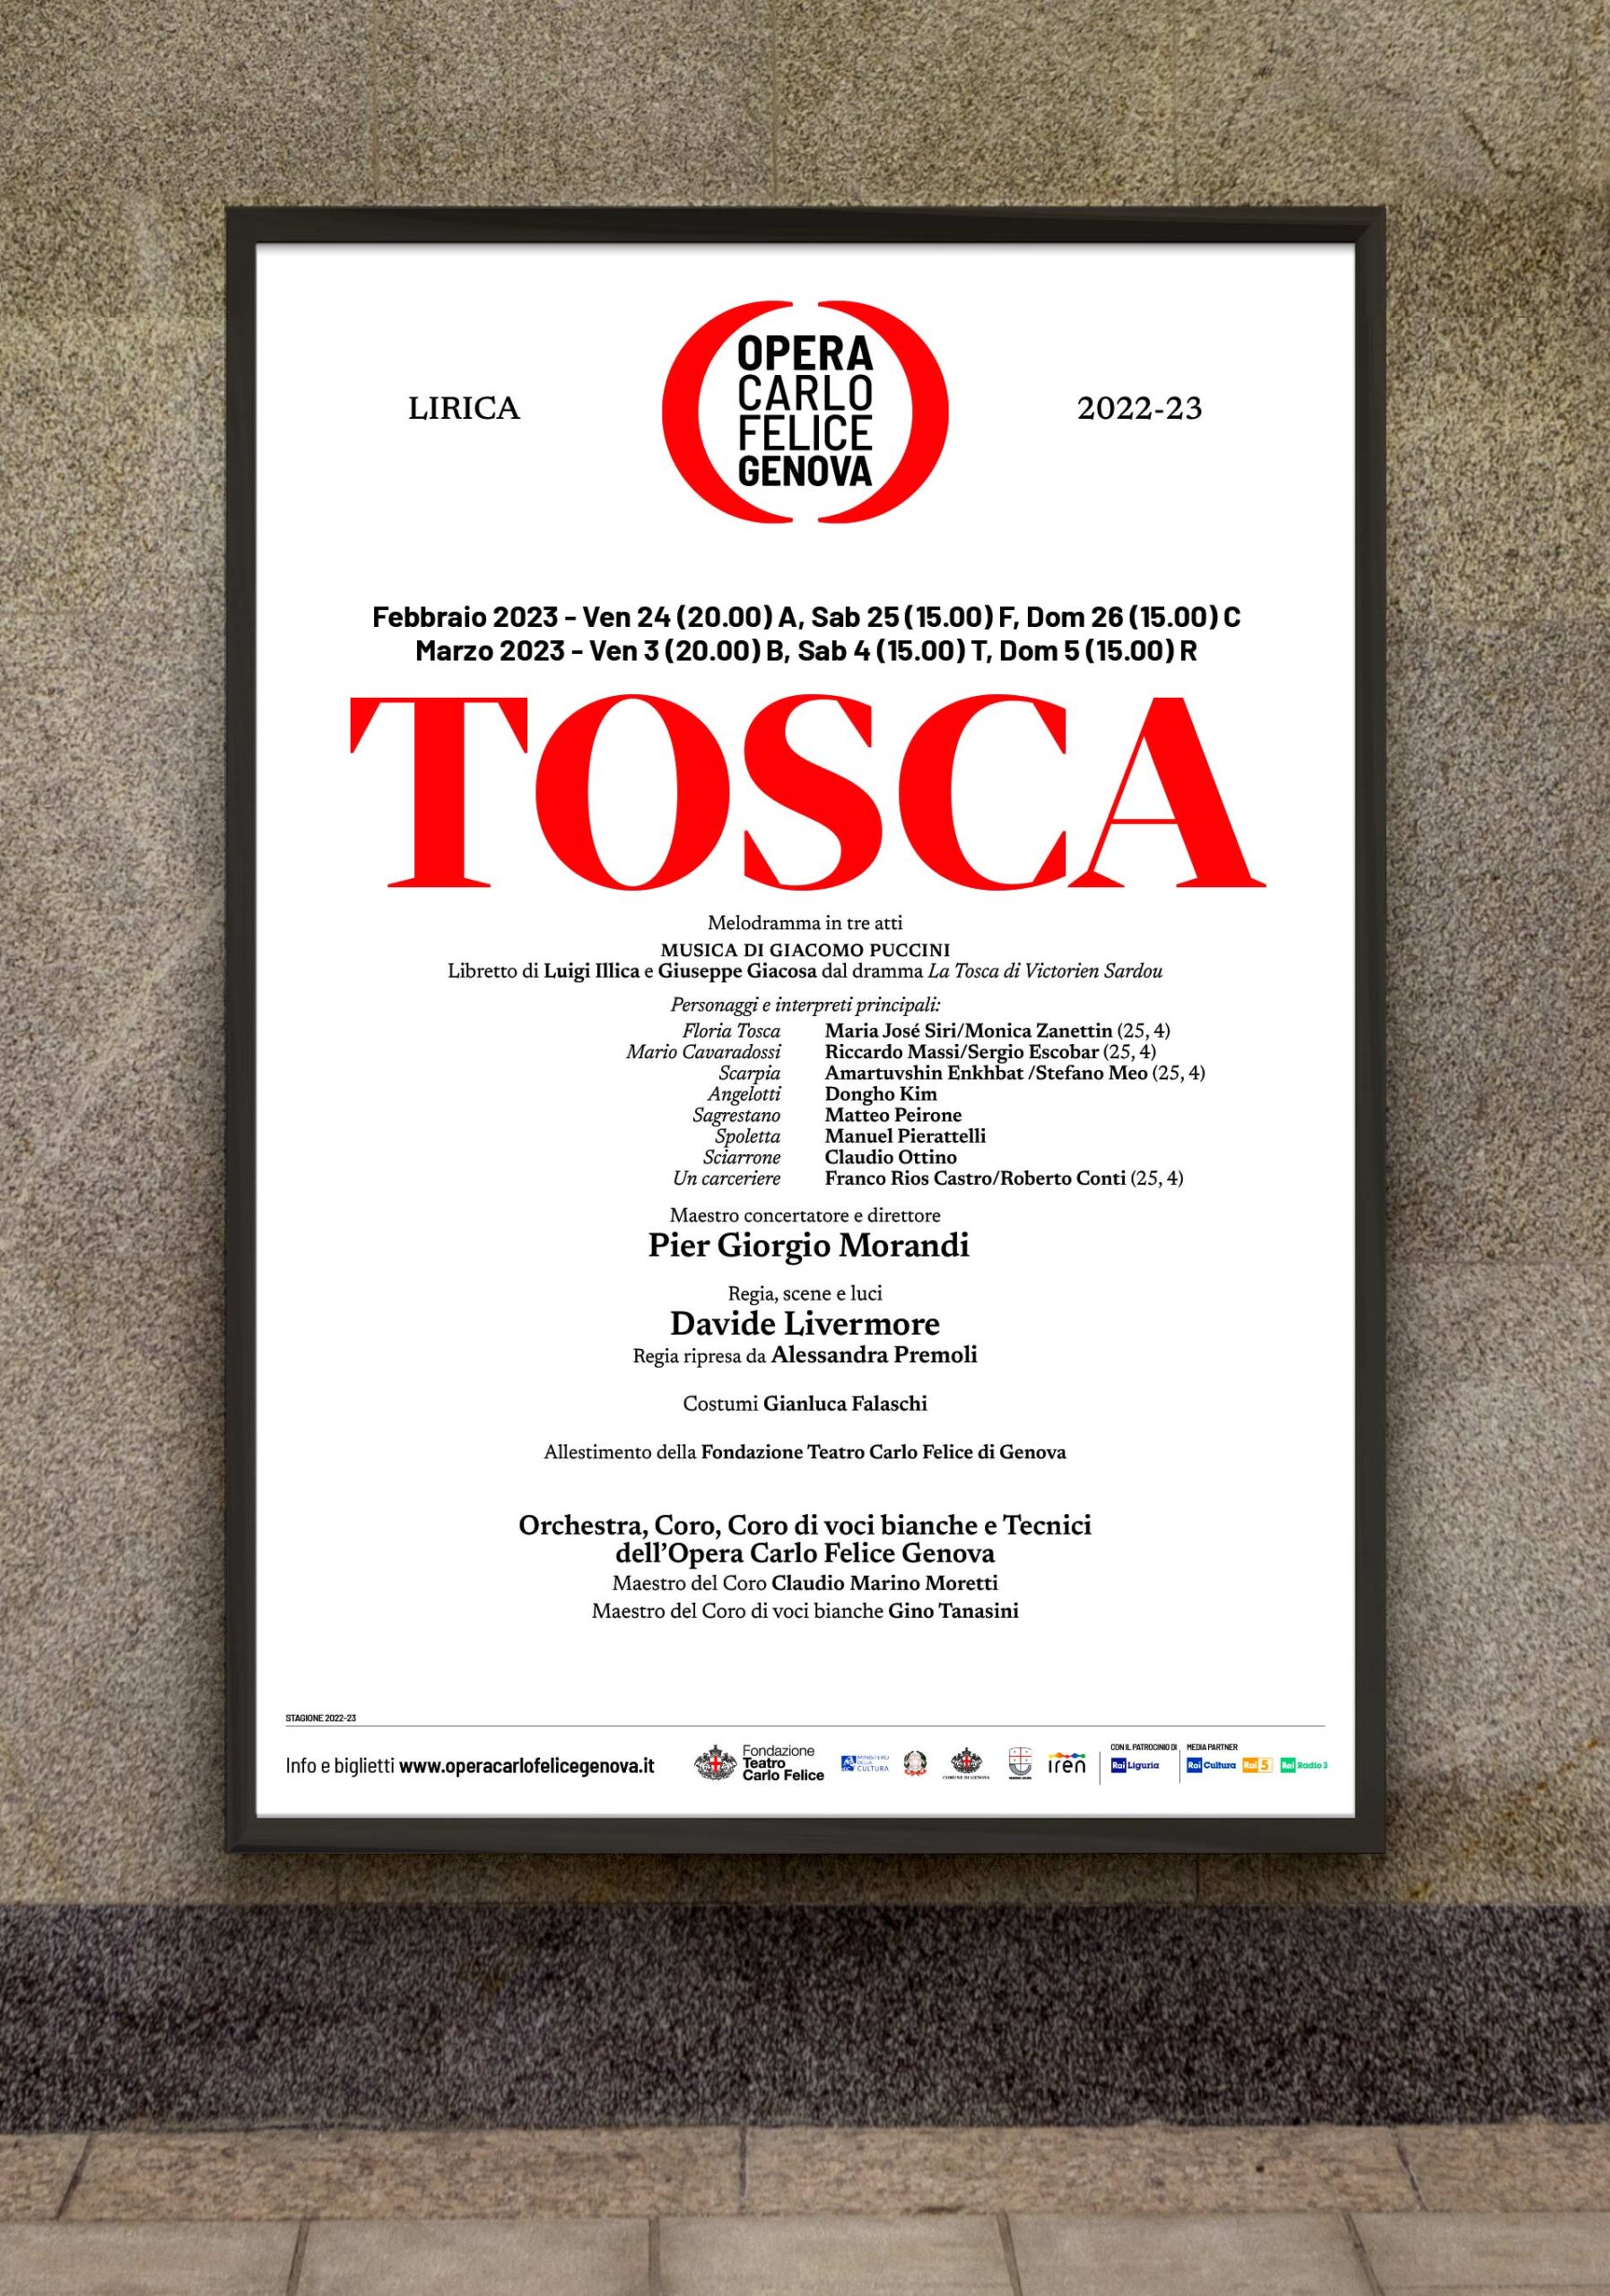 Opera Carlo Felice Tosca Rossetti Brand Design